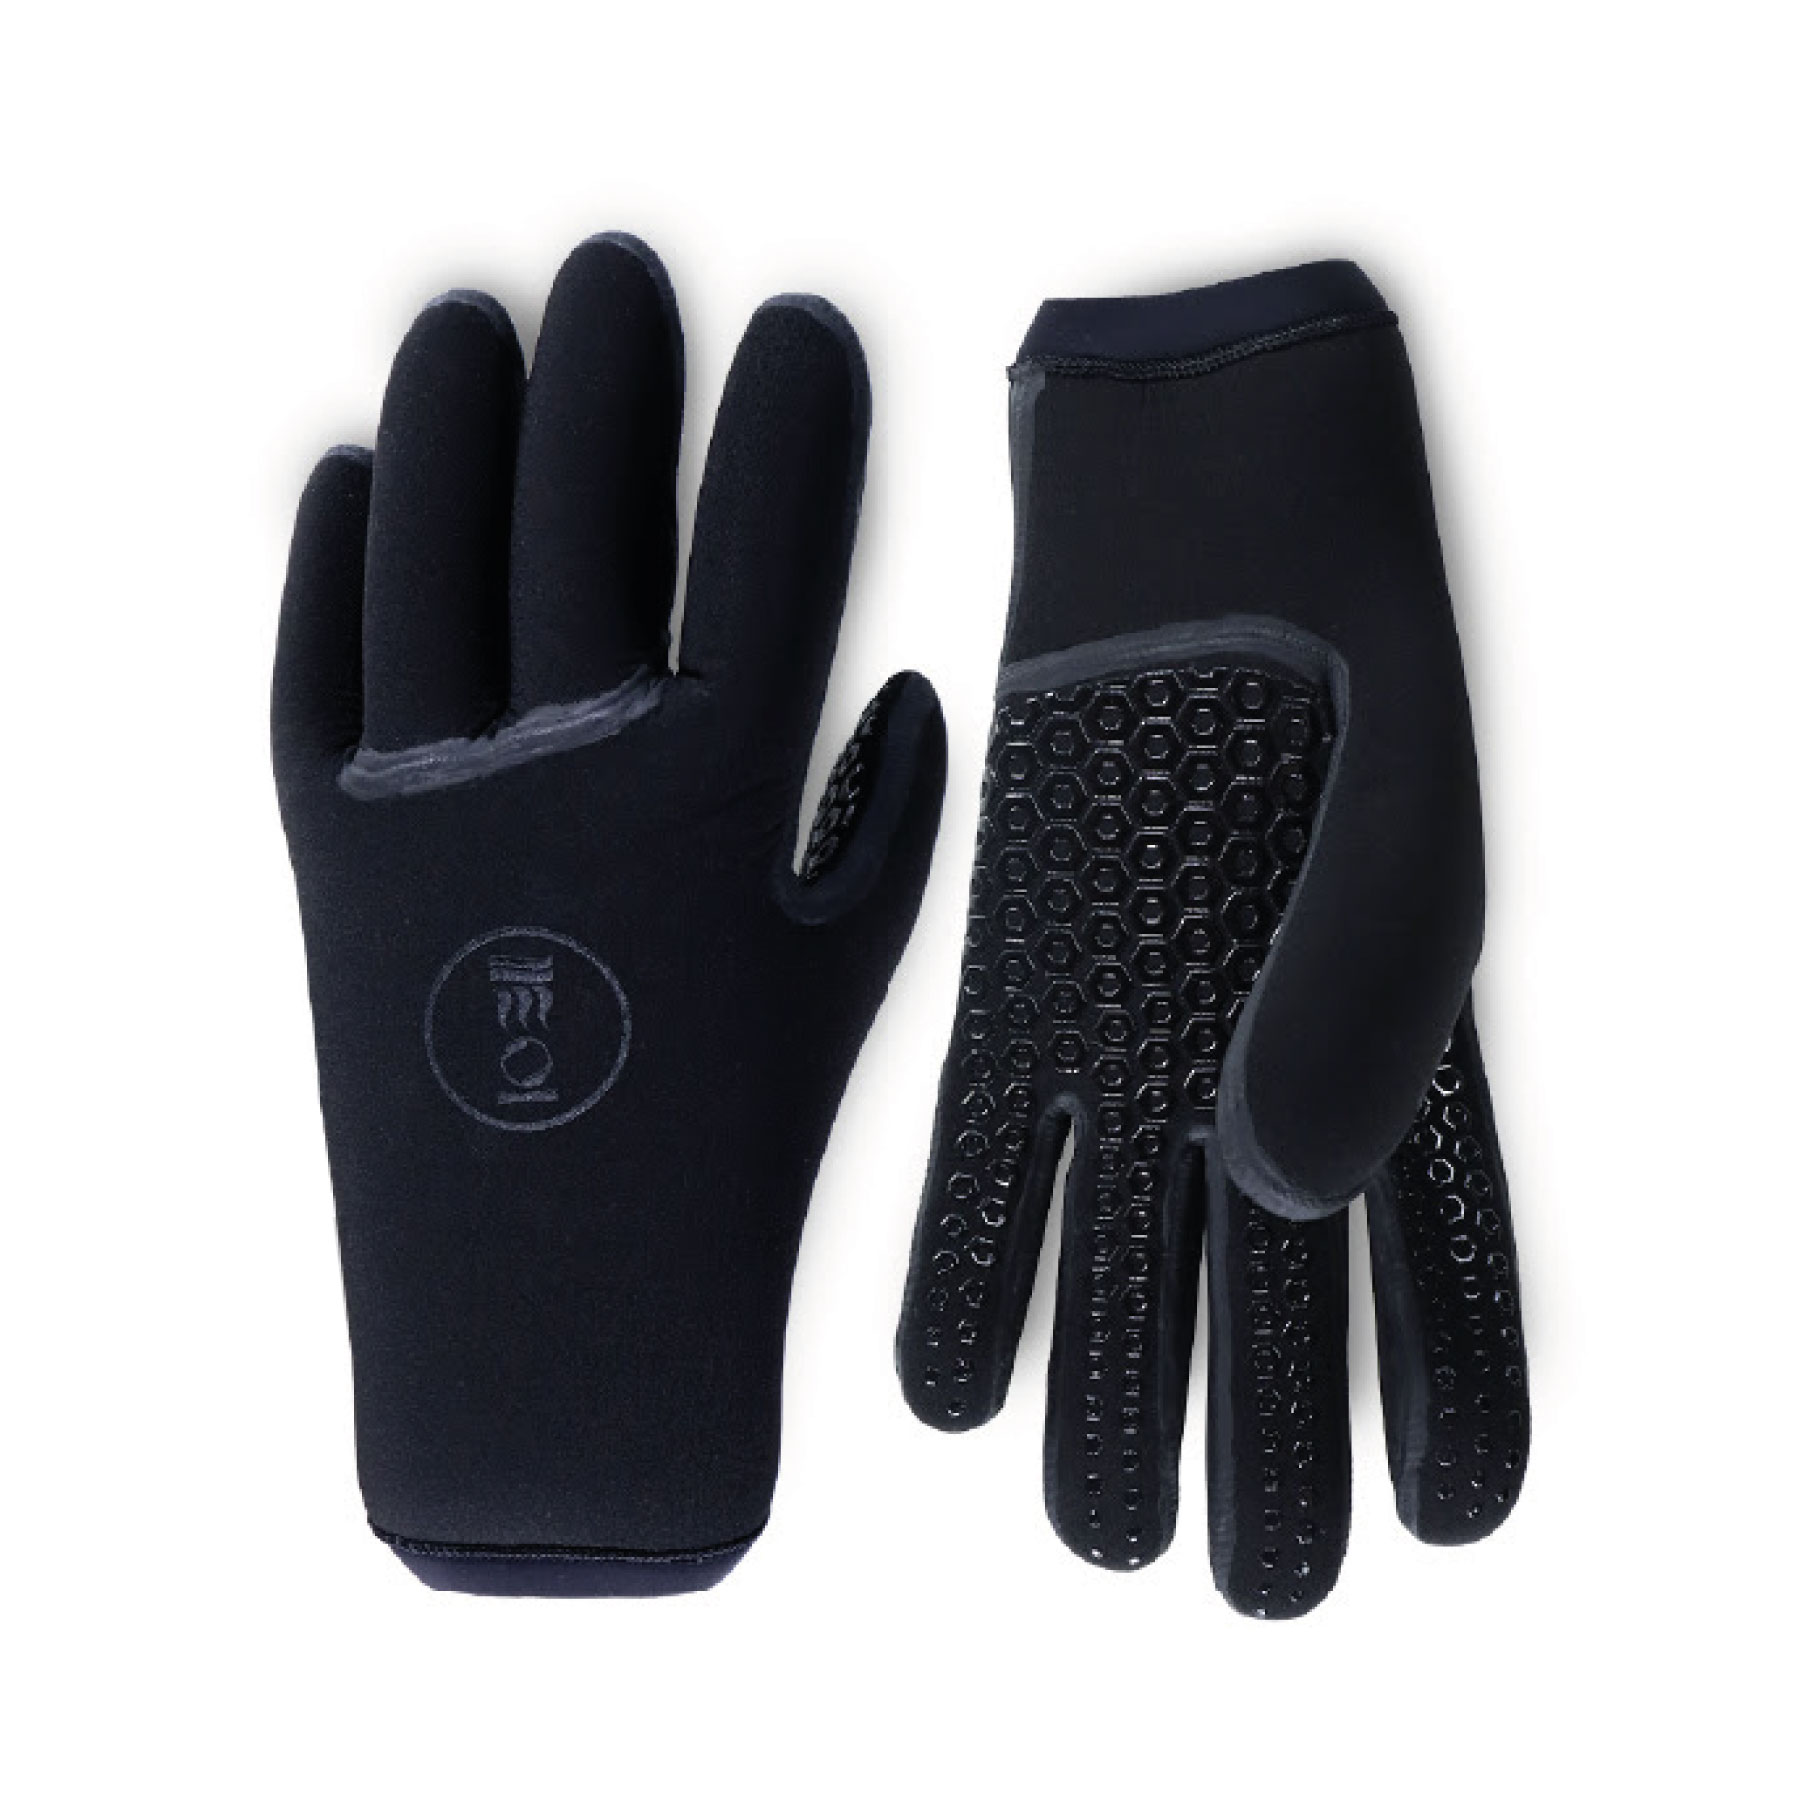 5mm Gloves - The Honest Diver